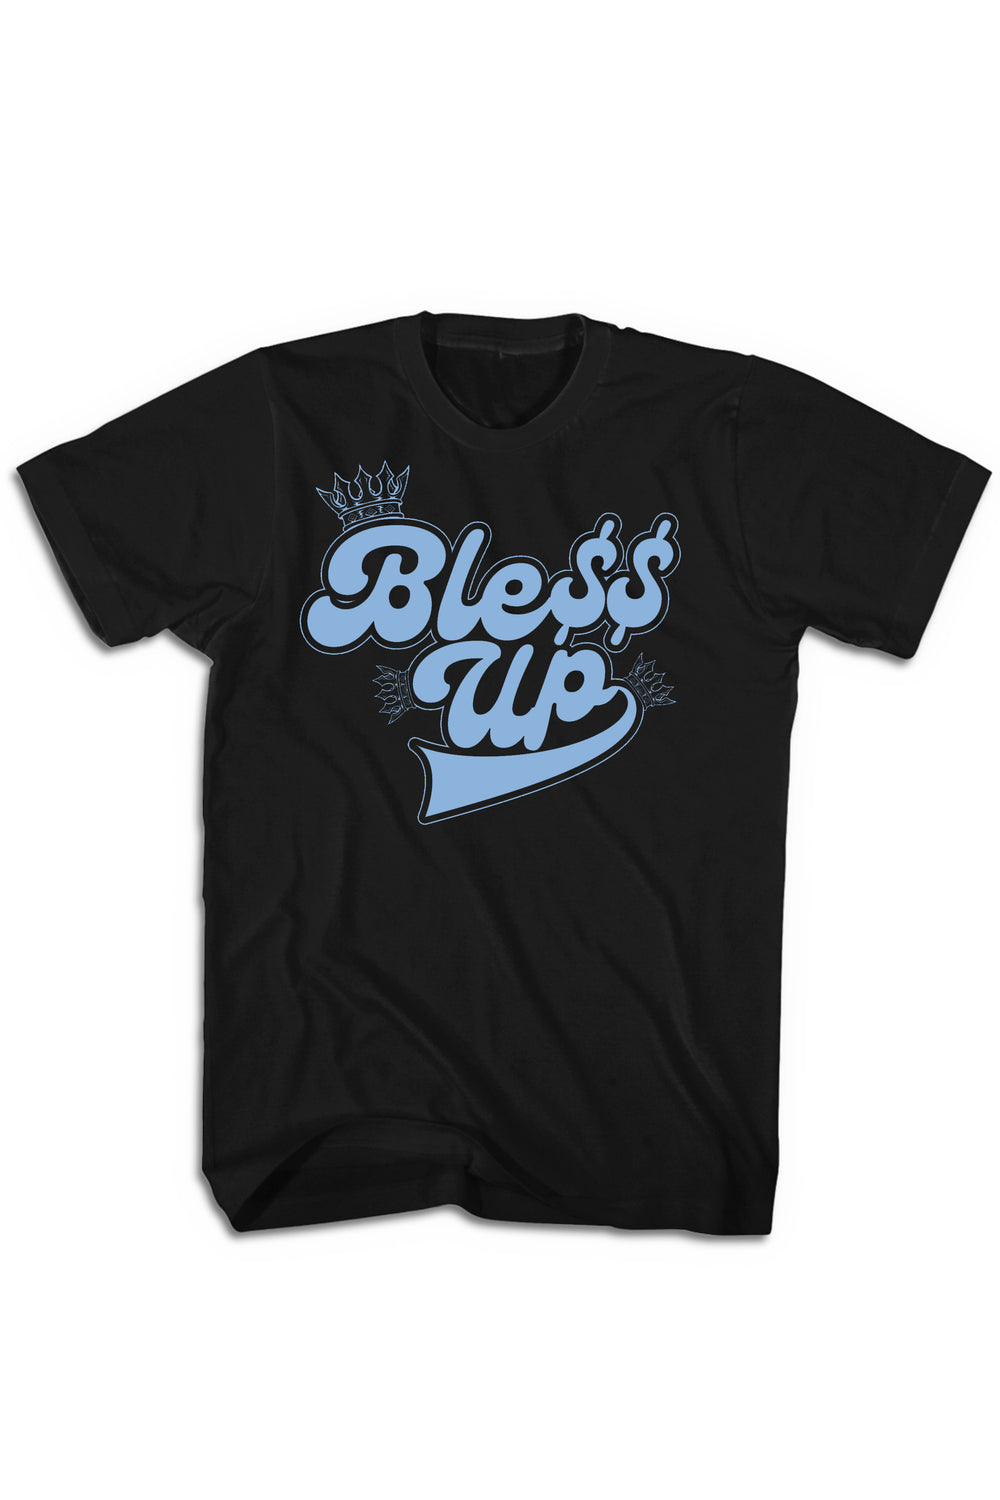 Bless Up Tee (Blue Logo) - Zamage